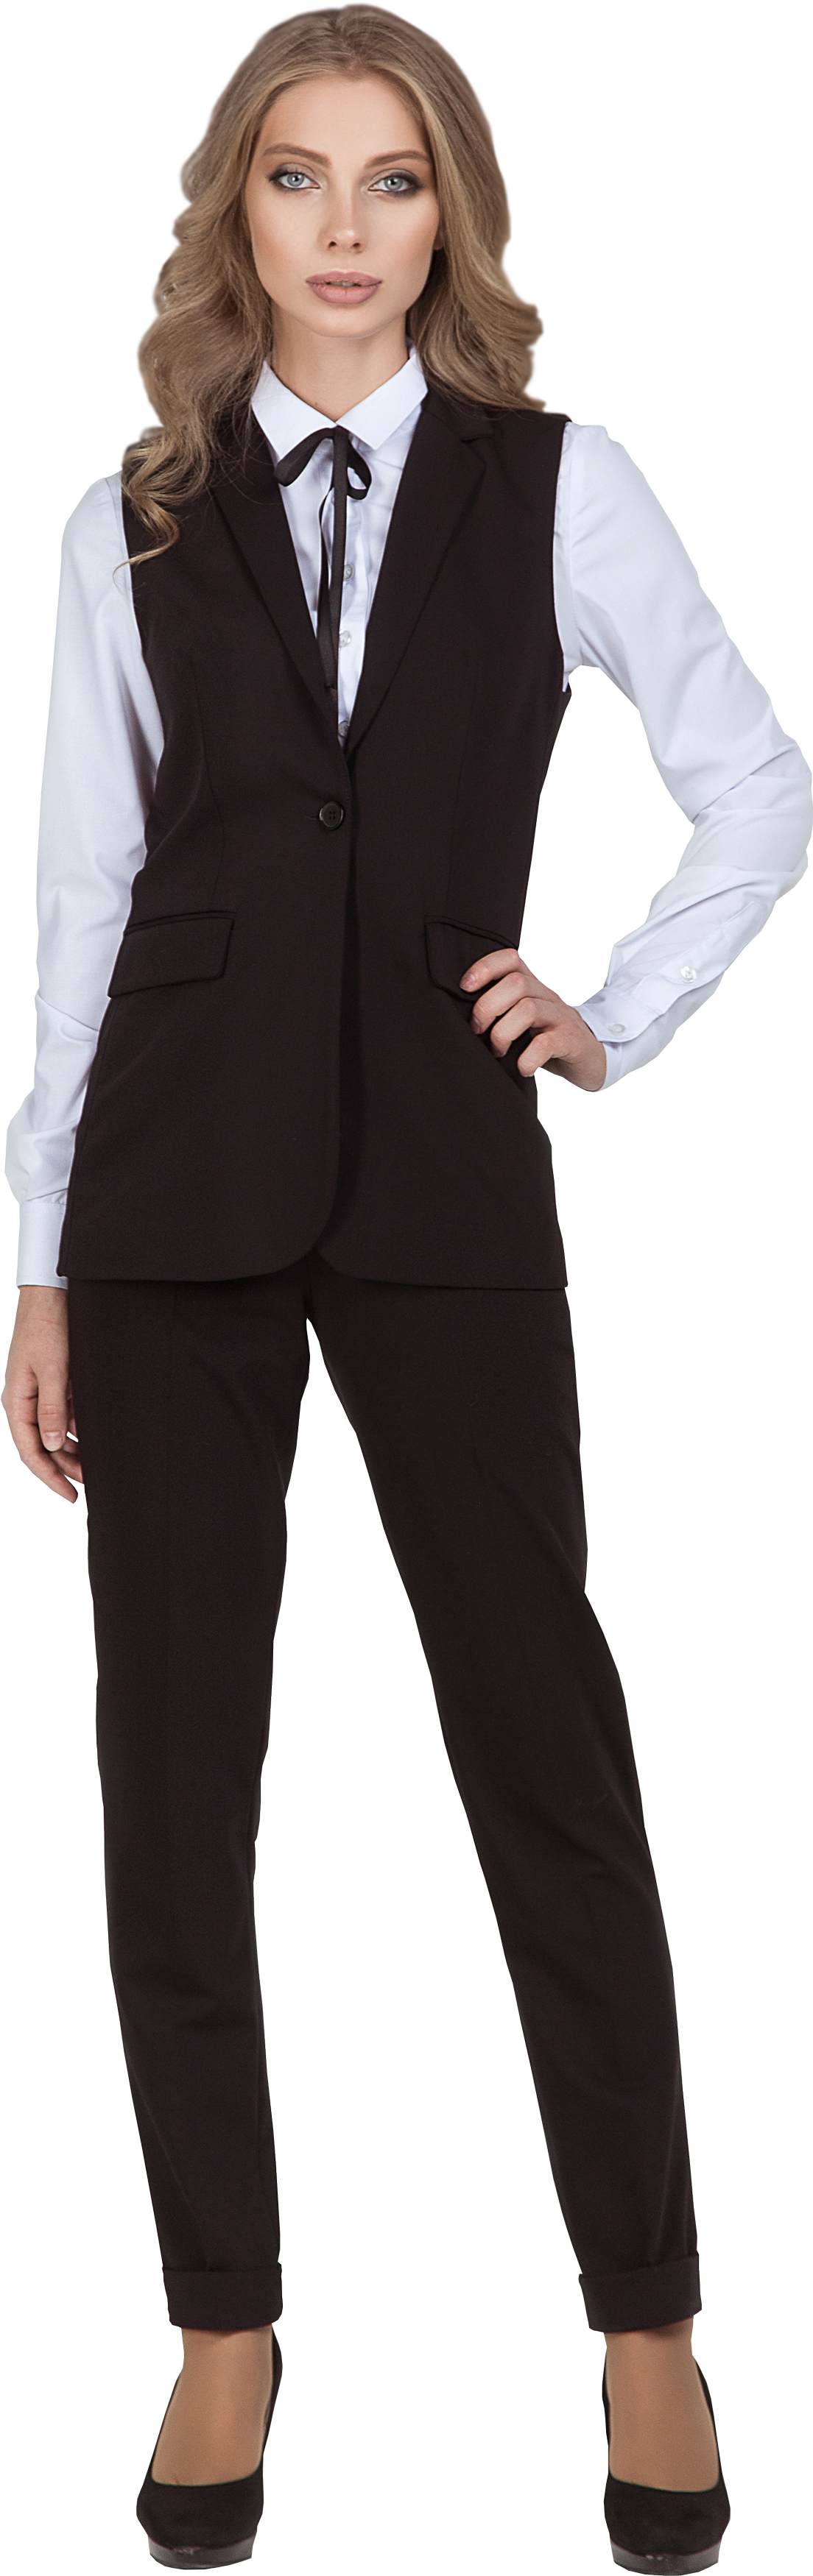 Комплект для администратора VISHERA - удлиненная жилетка / брюки, женский.  0